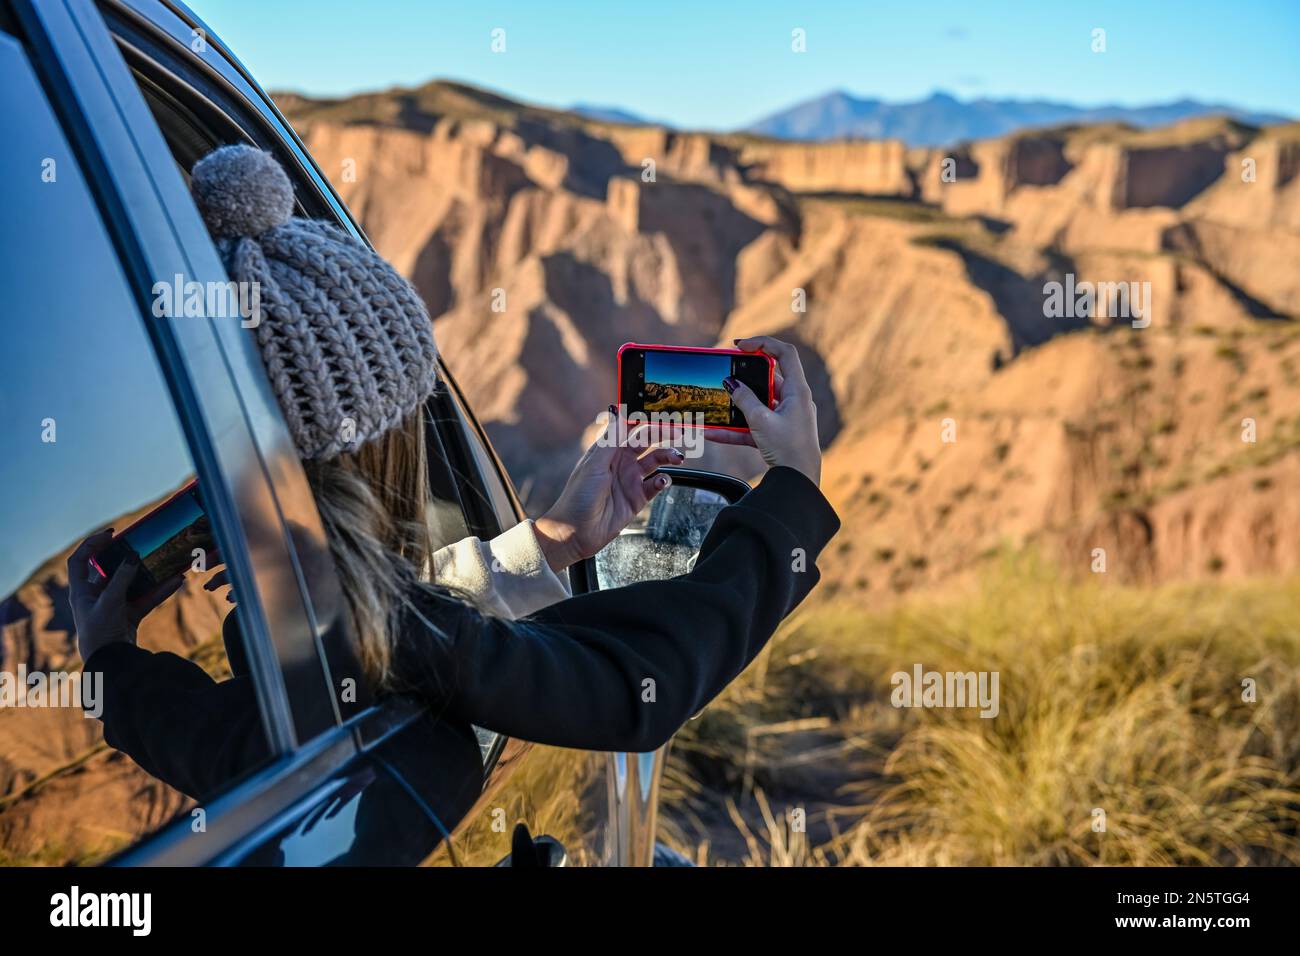 Ein junges Mädchen, das durch ein Autofenster Fotos von der Wüstenlandschaft macht Stockfoto